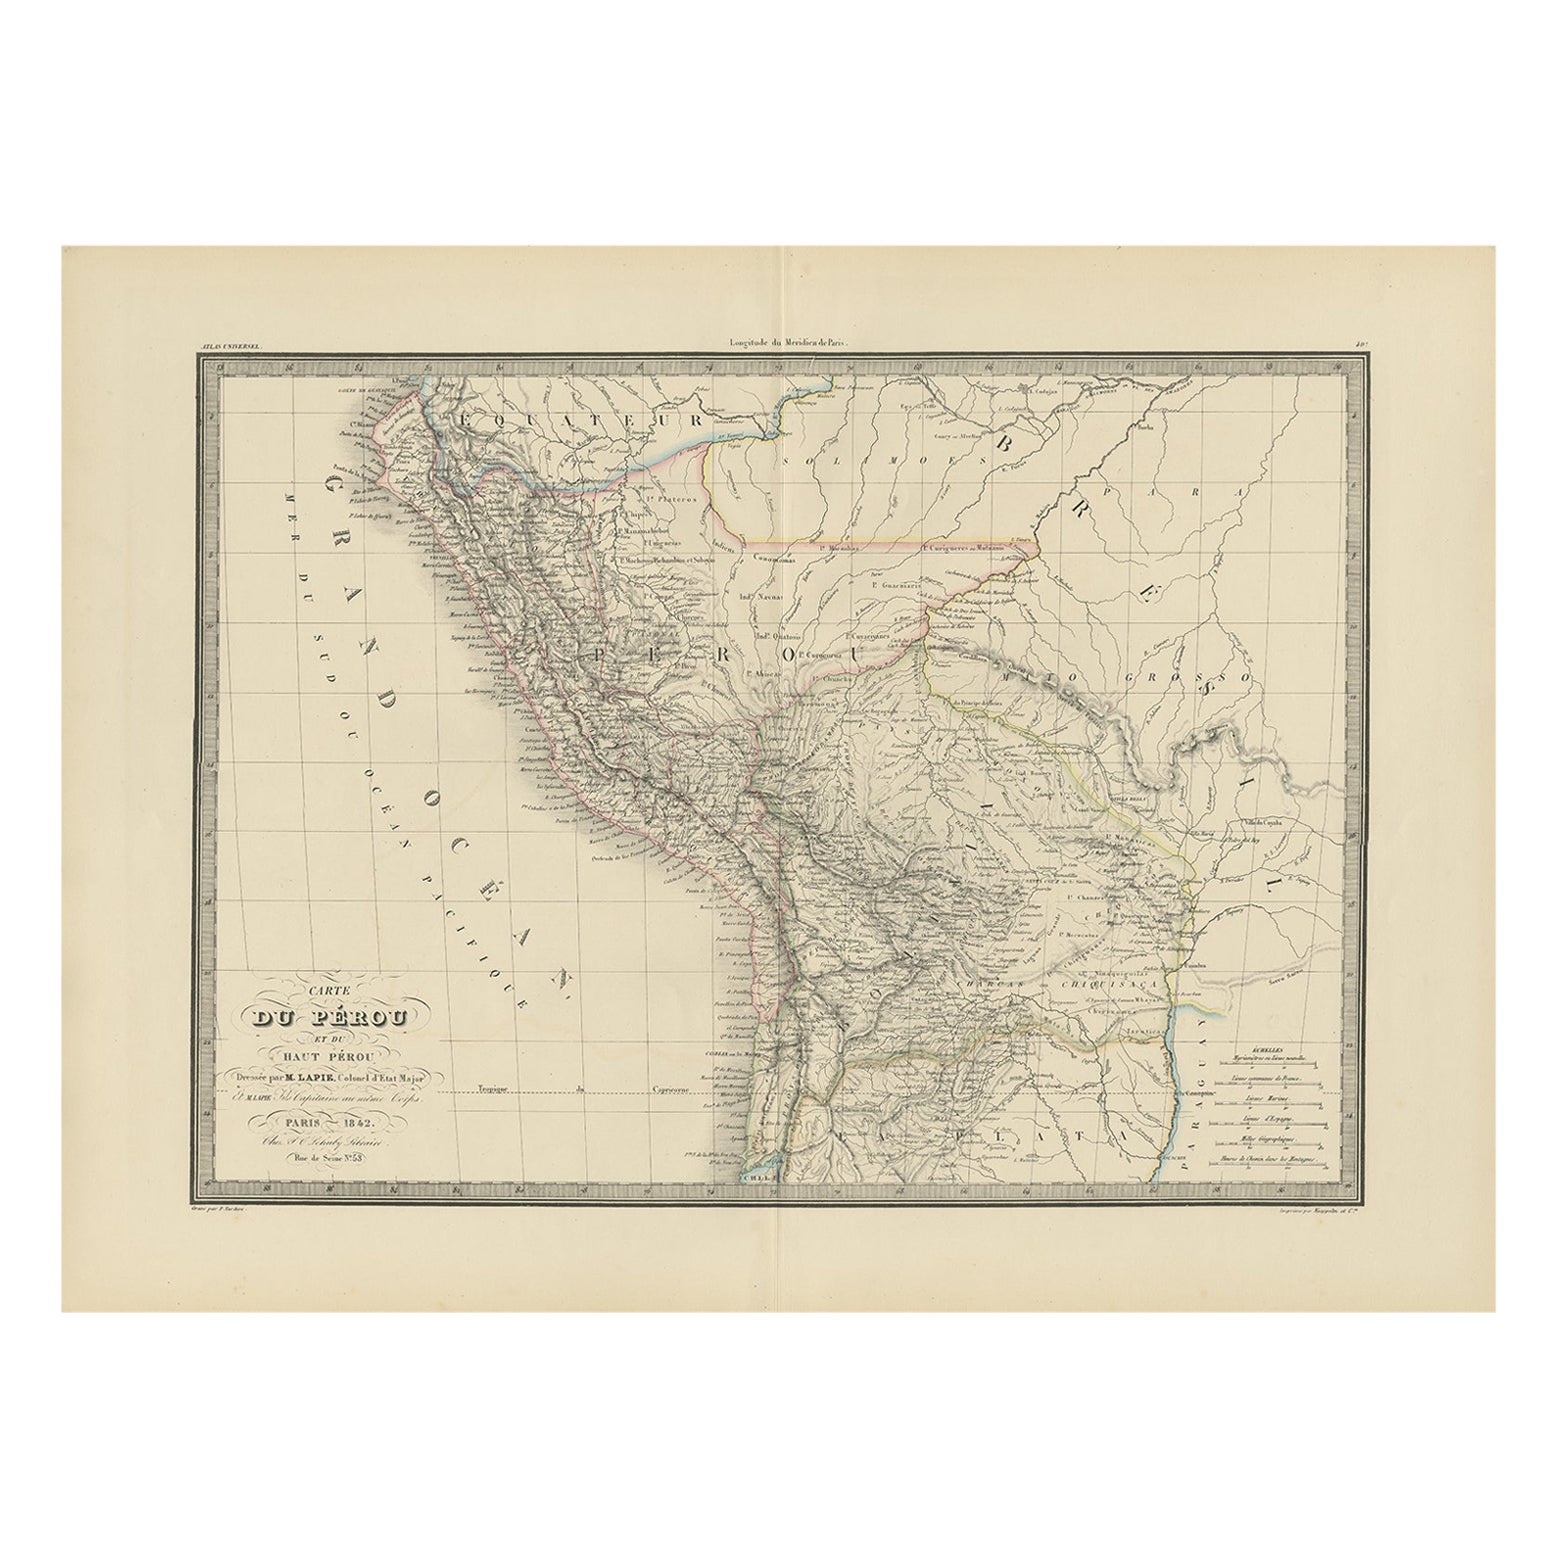 Antique Map of Peru, Ecuador and Bolivia by Lapie, 1842